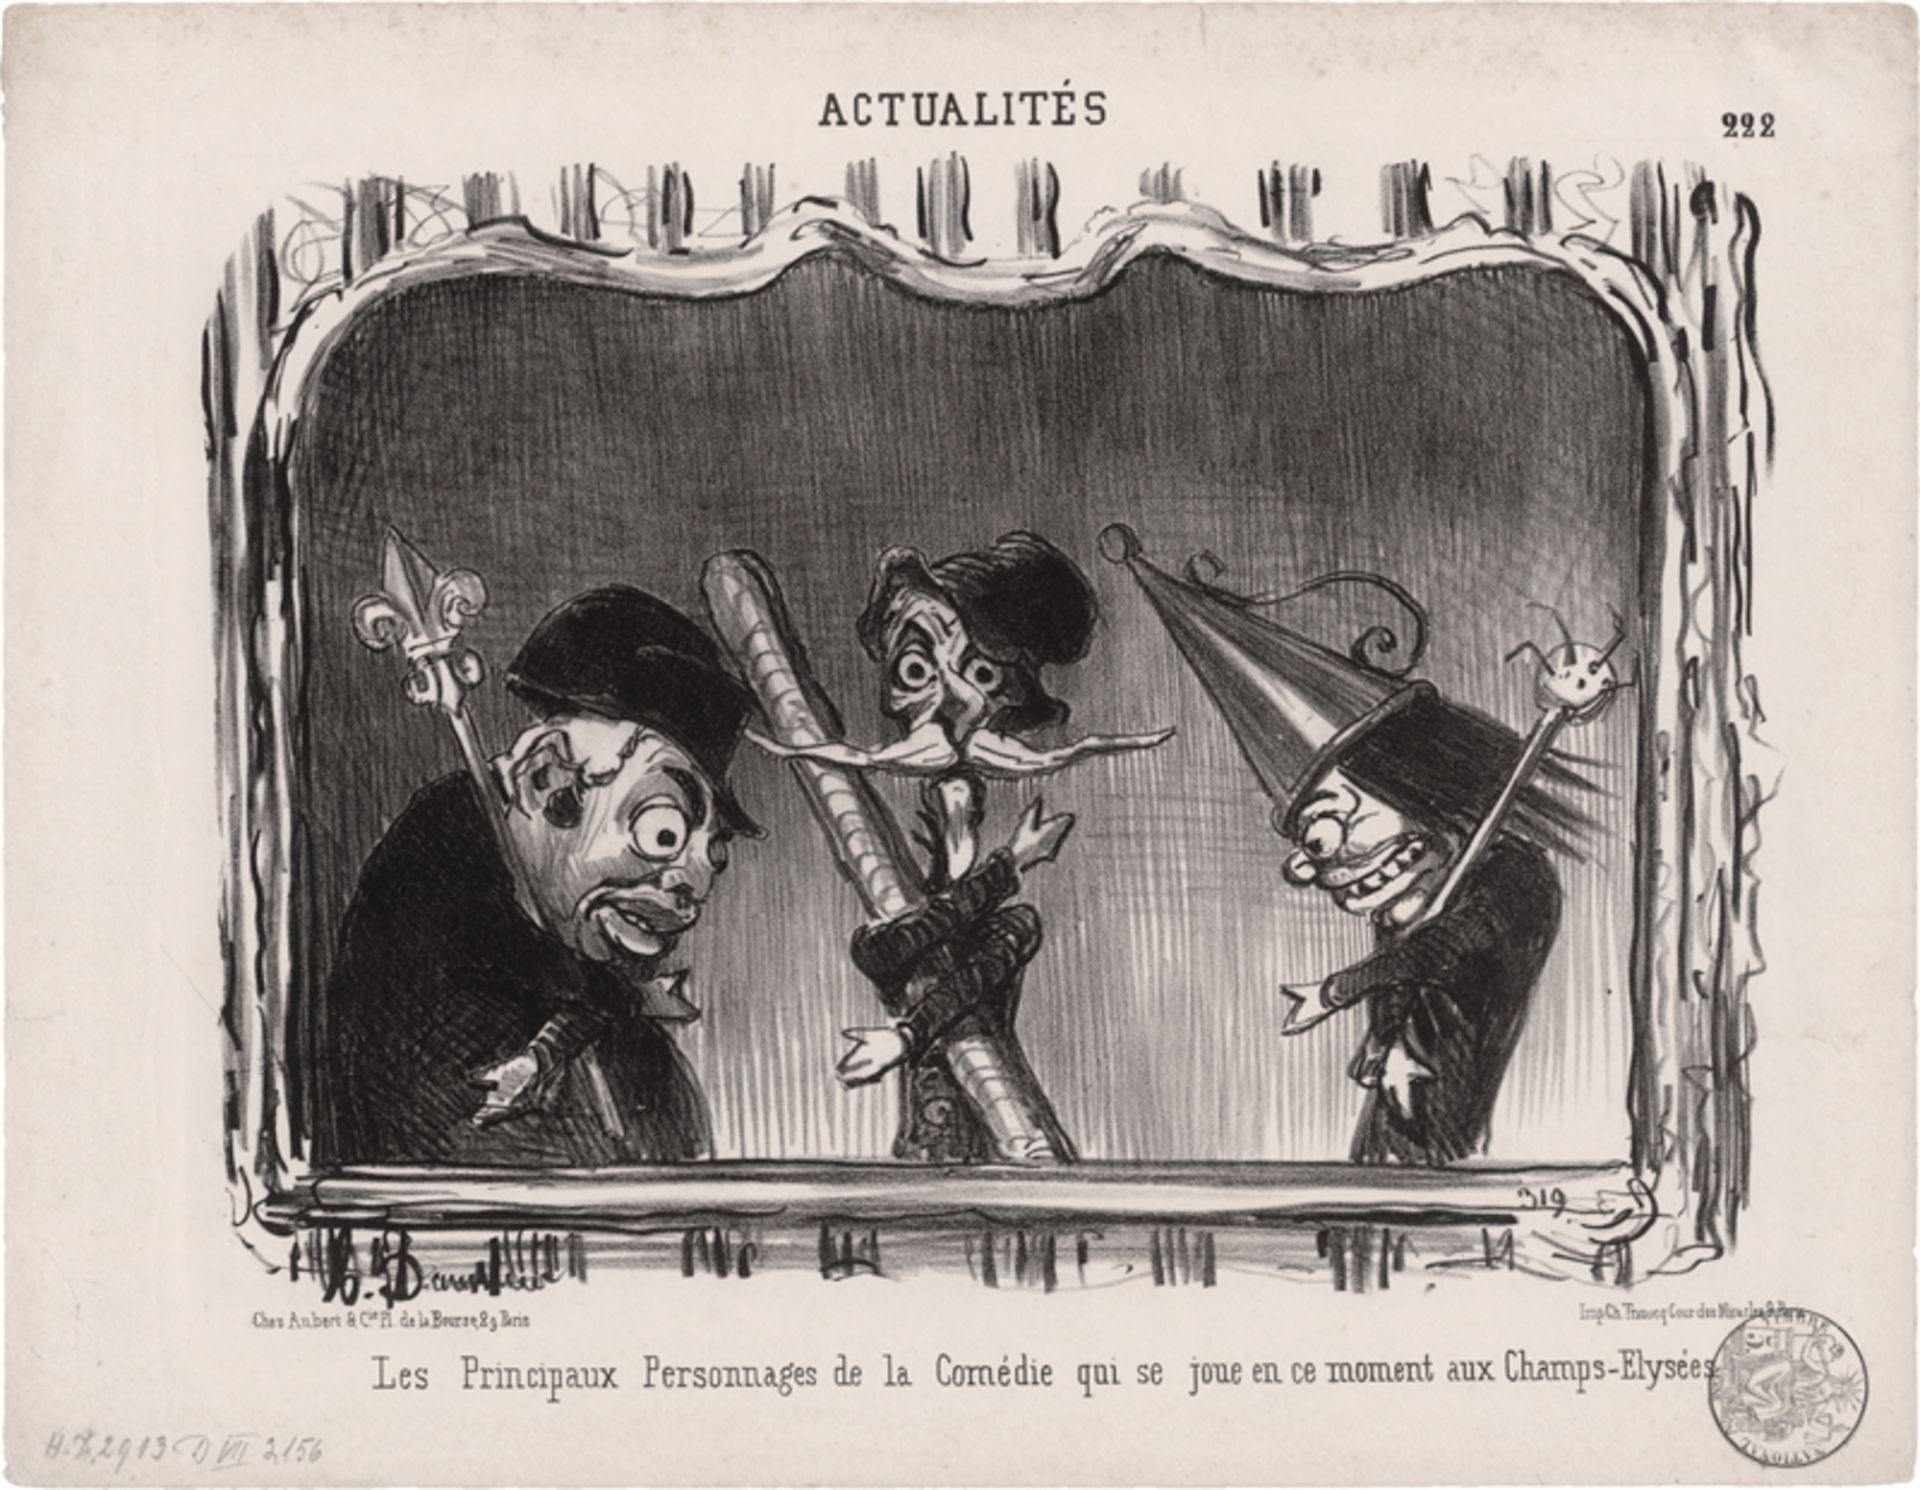 Daumier, Honoré: Les Principaux Personnages de la Comédie